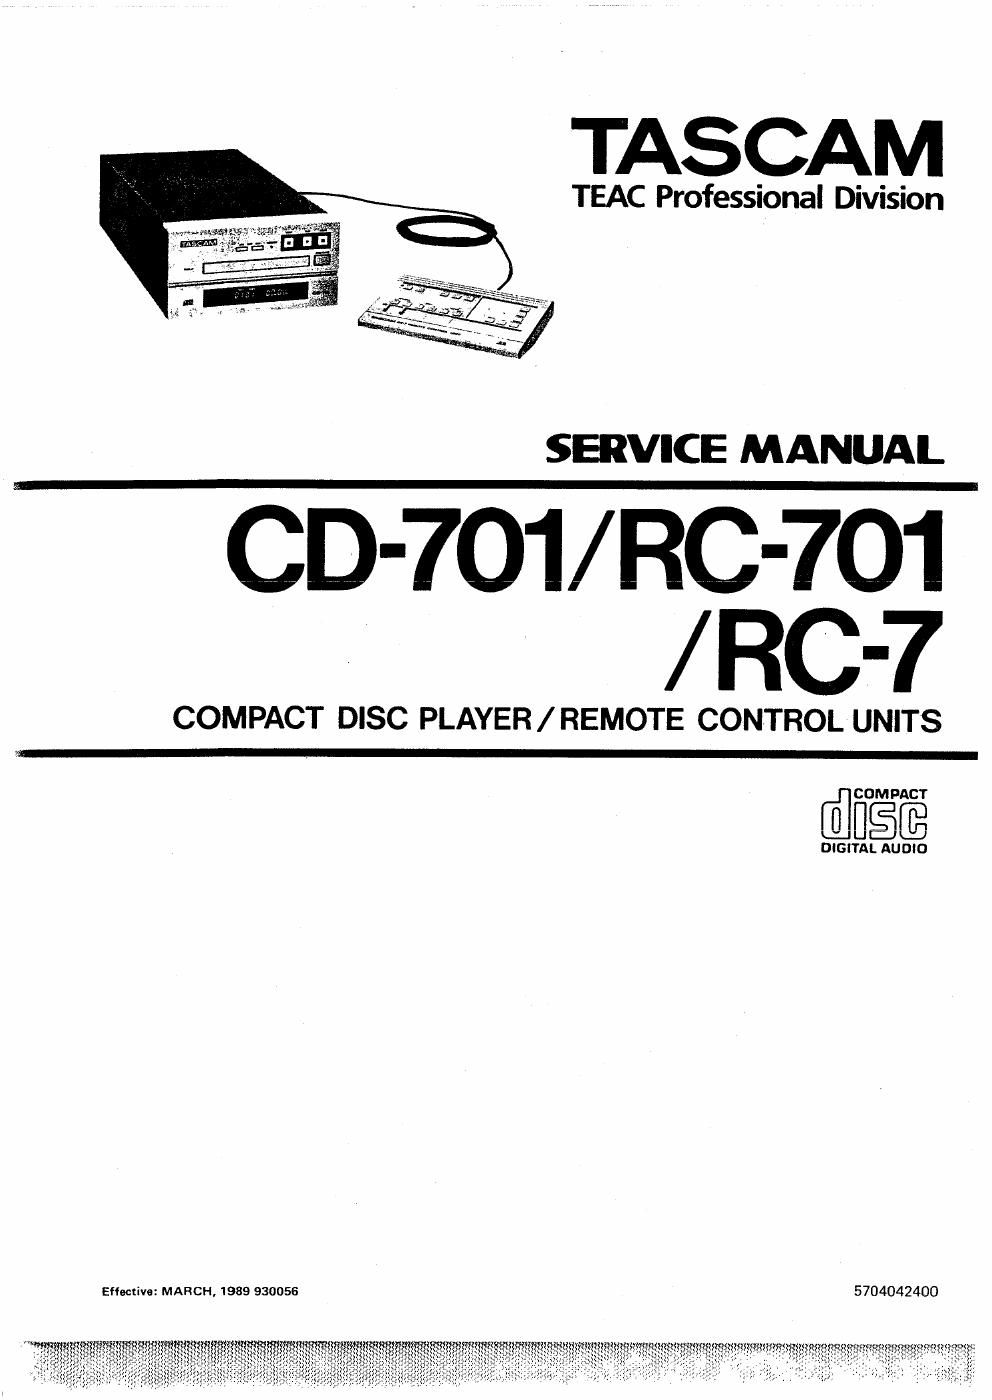 tascam cd 701 service manual